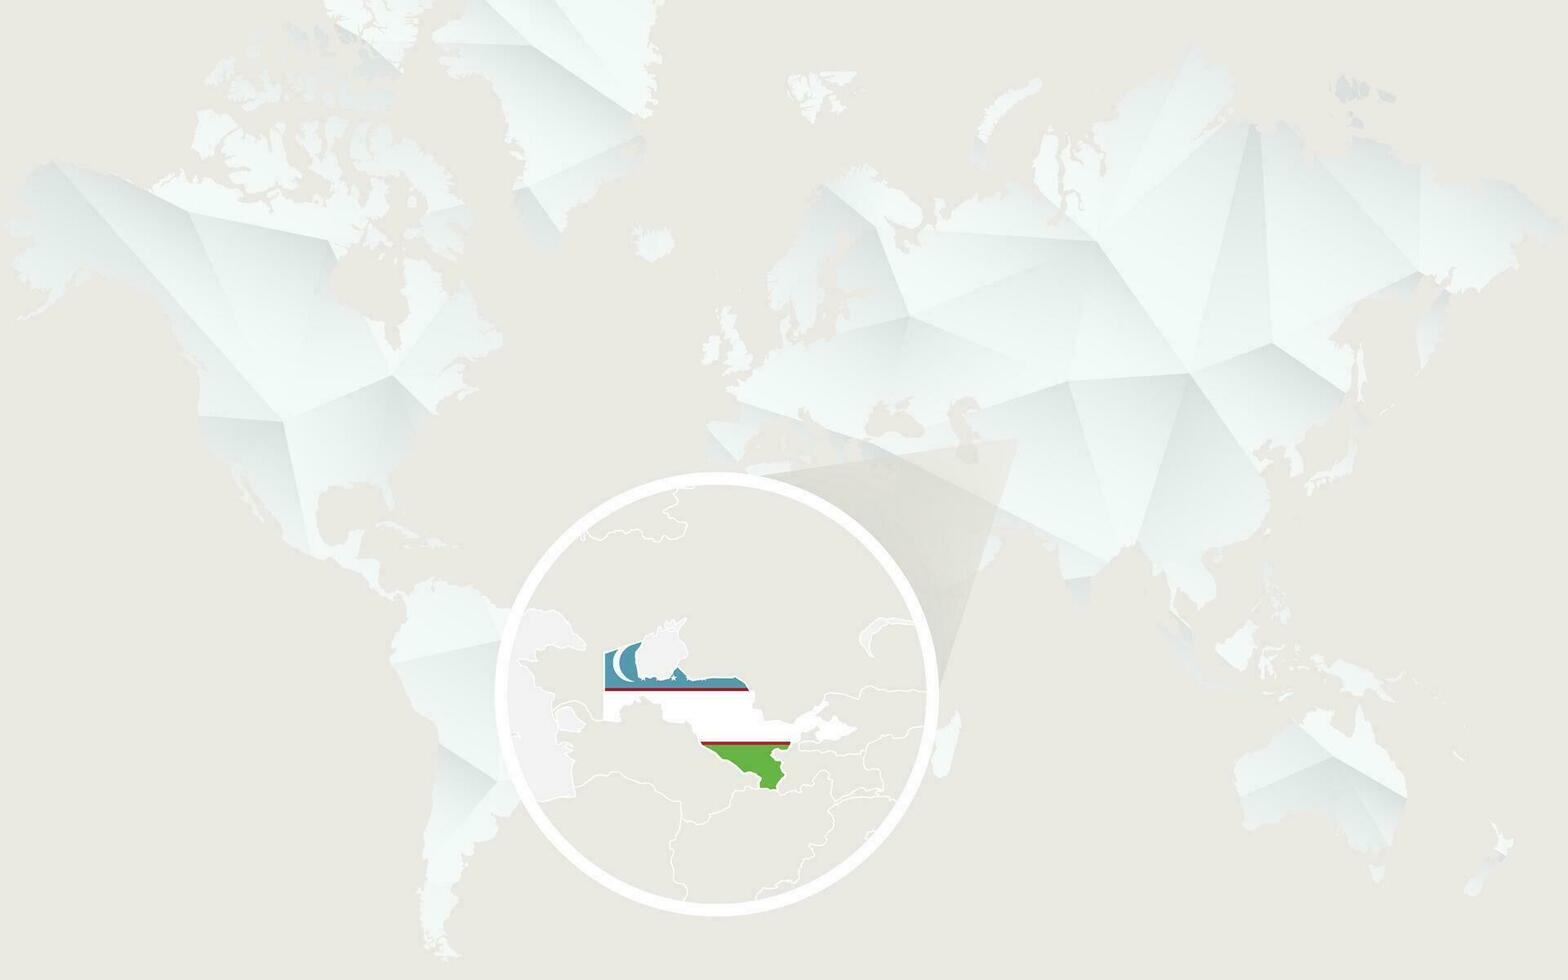 Usbekistan Karte mit Flagge im Kontur auf Weiß polygonal Welt Karte. vektor